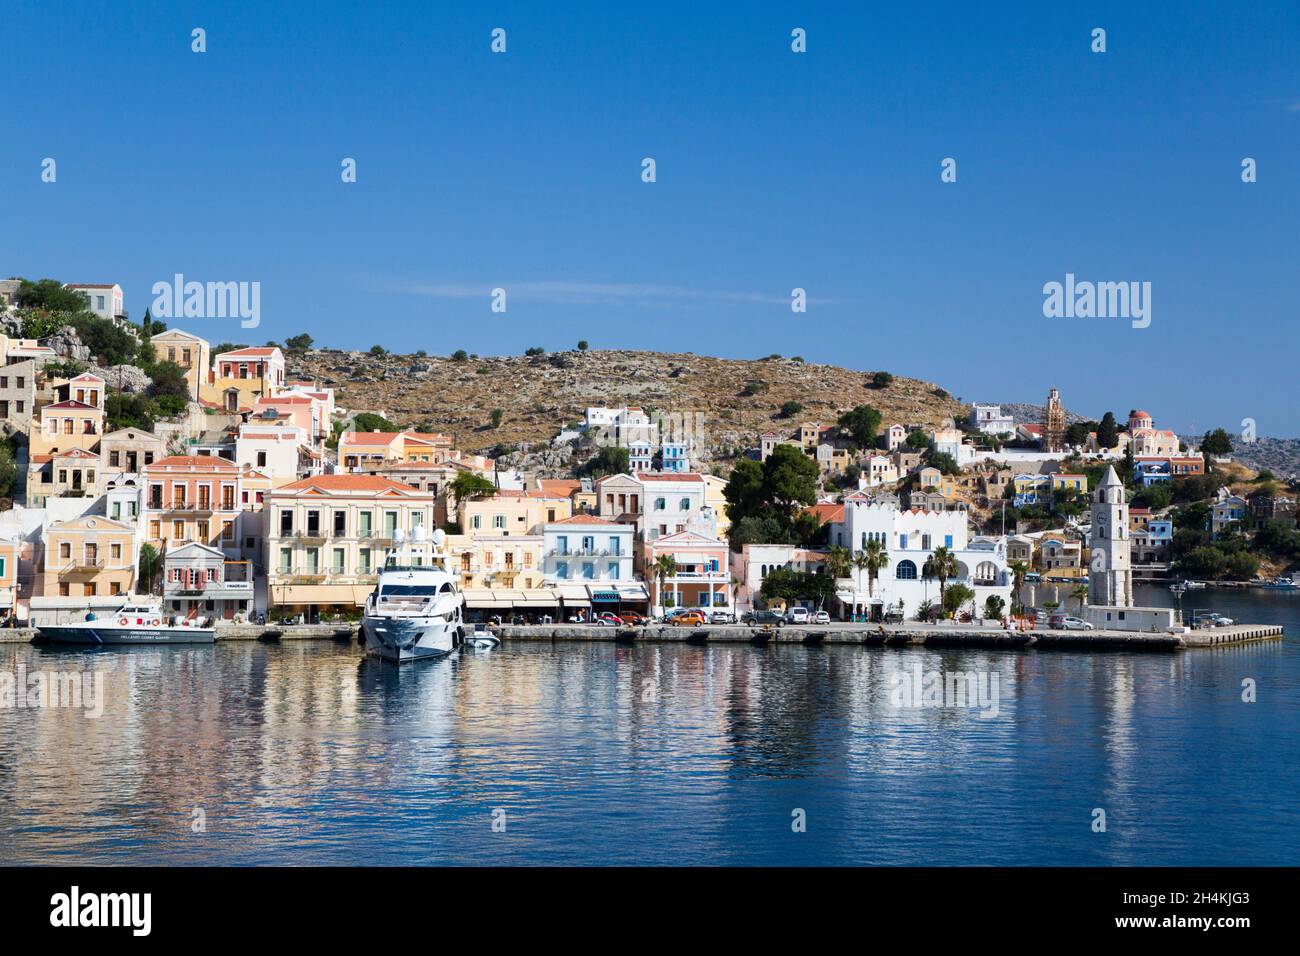 Port de Gialos, île Symi (Simi), Groupe des îles Dodécanèse, Grèce Banque D'Images